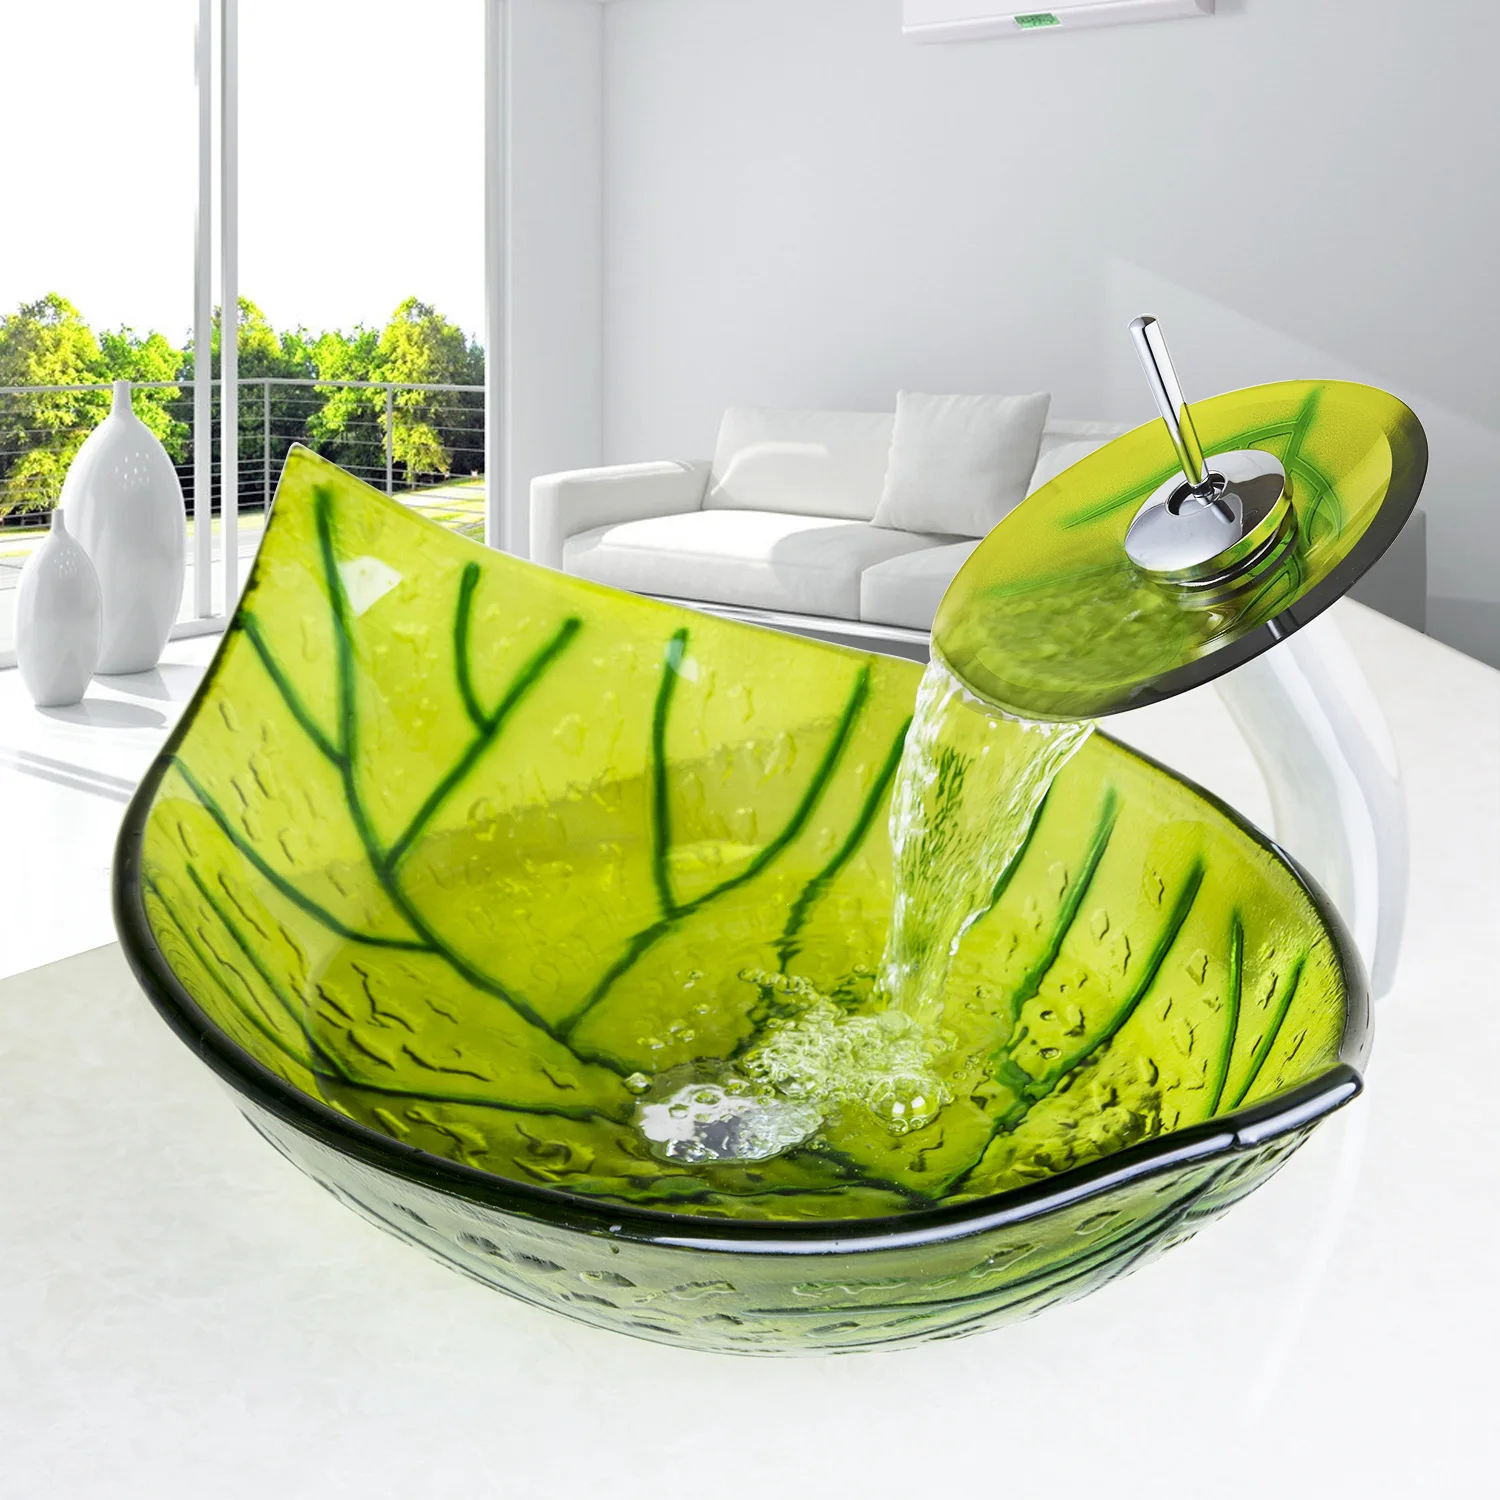 

Tempered Glass Washbasin Artistic Basin Leaf Shaped Glass bathroom sinks glass sink bowls bathroom wash basin